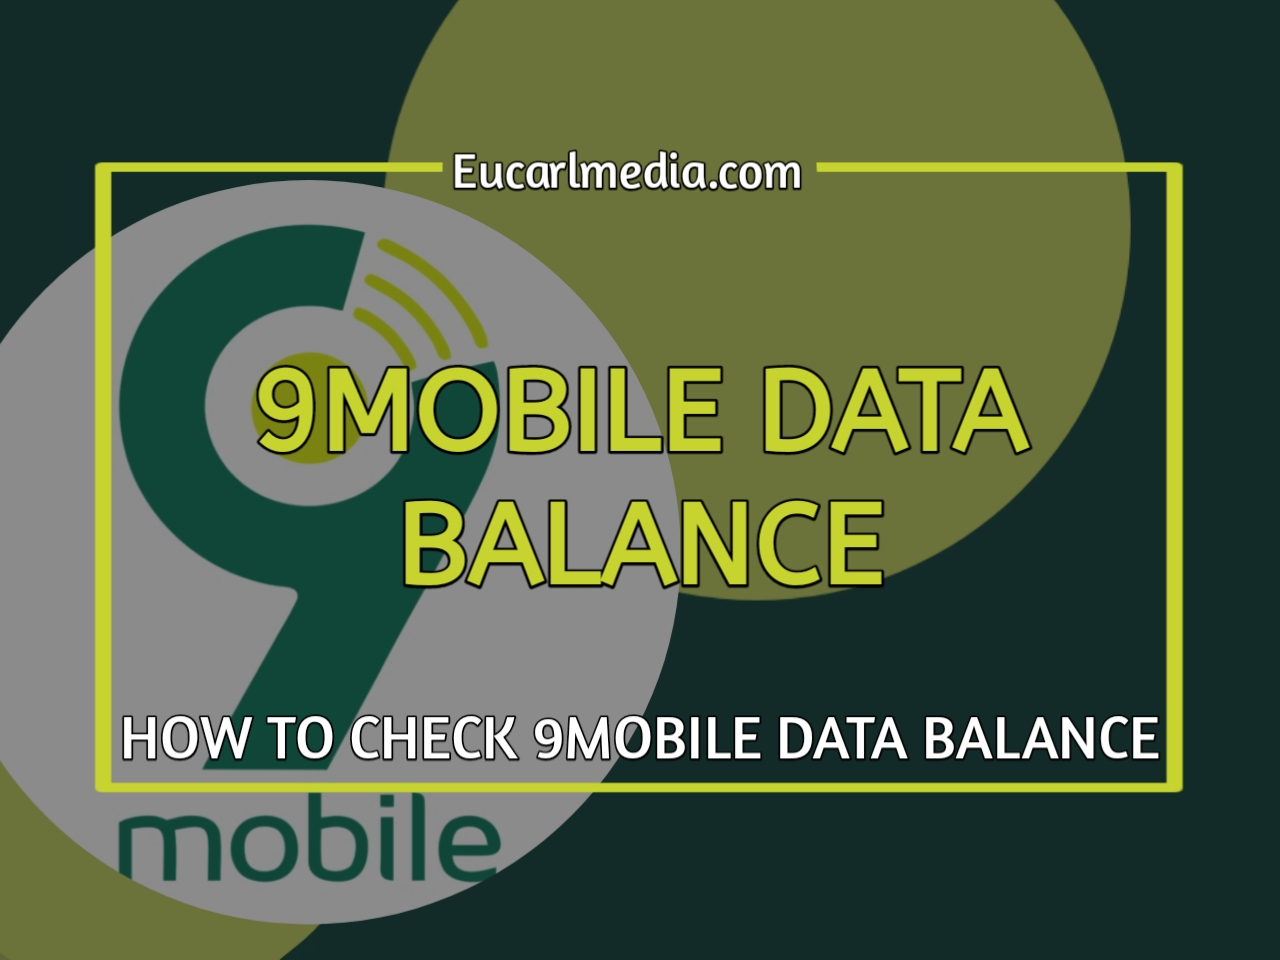 Check 9mobile Data Balance